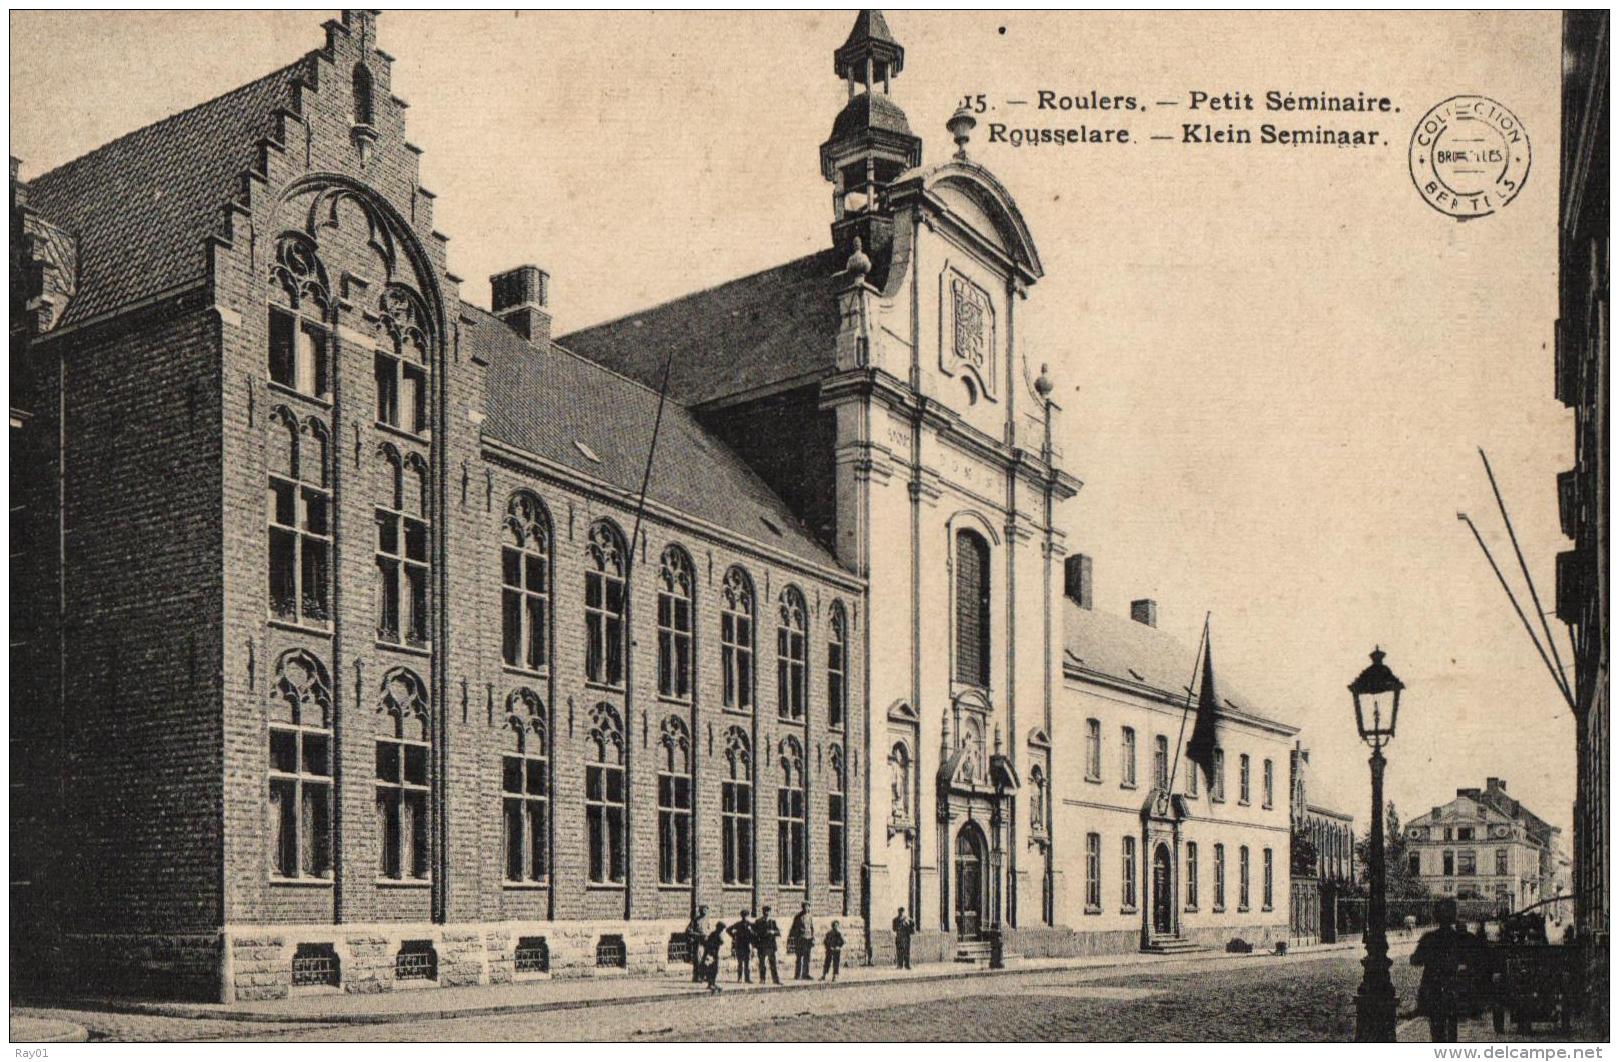 BELGIQUE - ROESELARE - ROUSSELARE - ROULERS - Petit Séminaire - Klein Seminaar. (n°15) - Roeselare